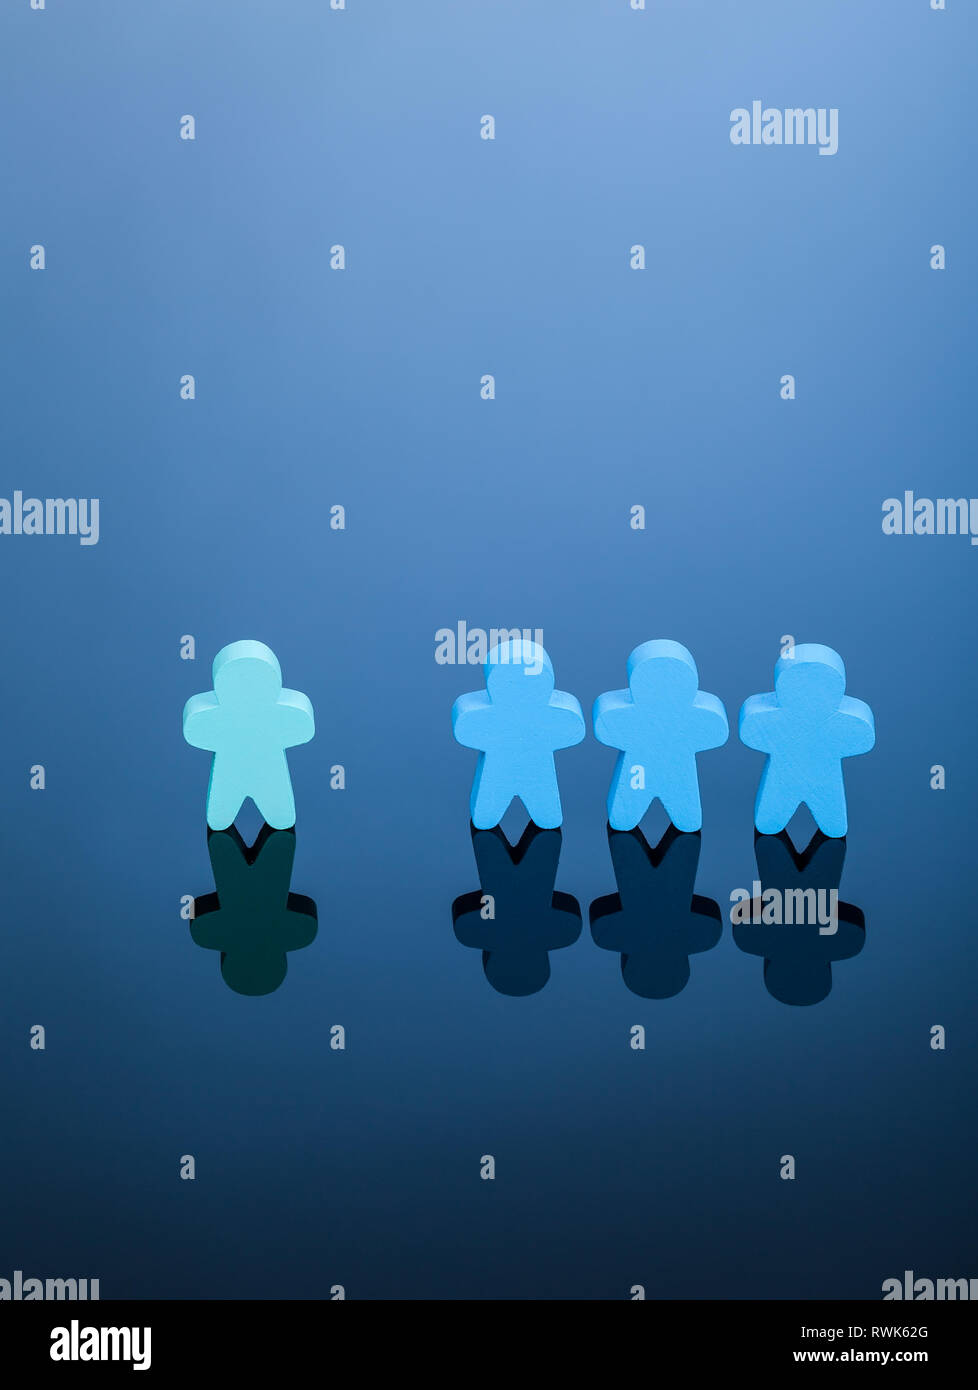 Tre blu meeples escludere una luce verde. Semplice immagine che rappresenta il concetto di discriminazione delle minoranze nella società o diritti non bilanciato. Foto Stock